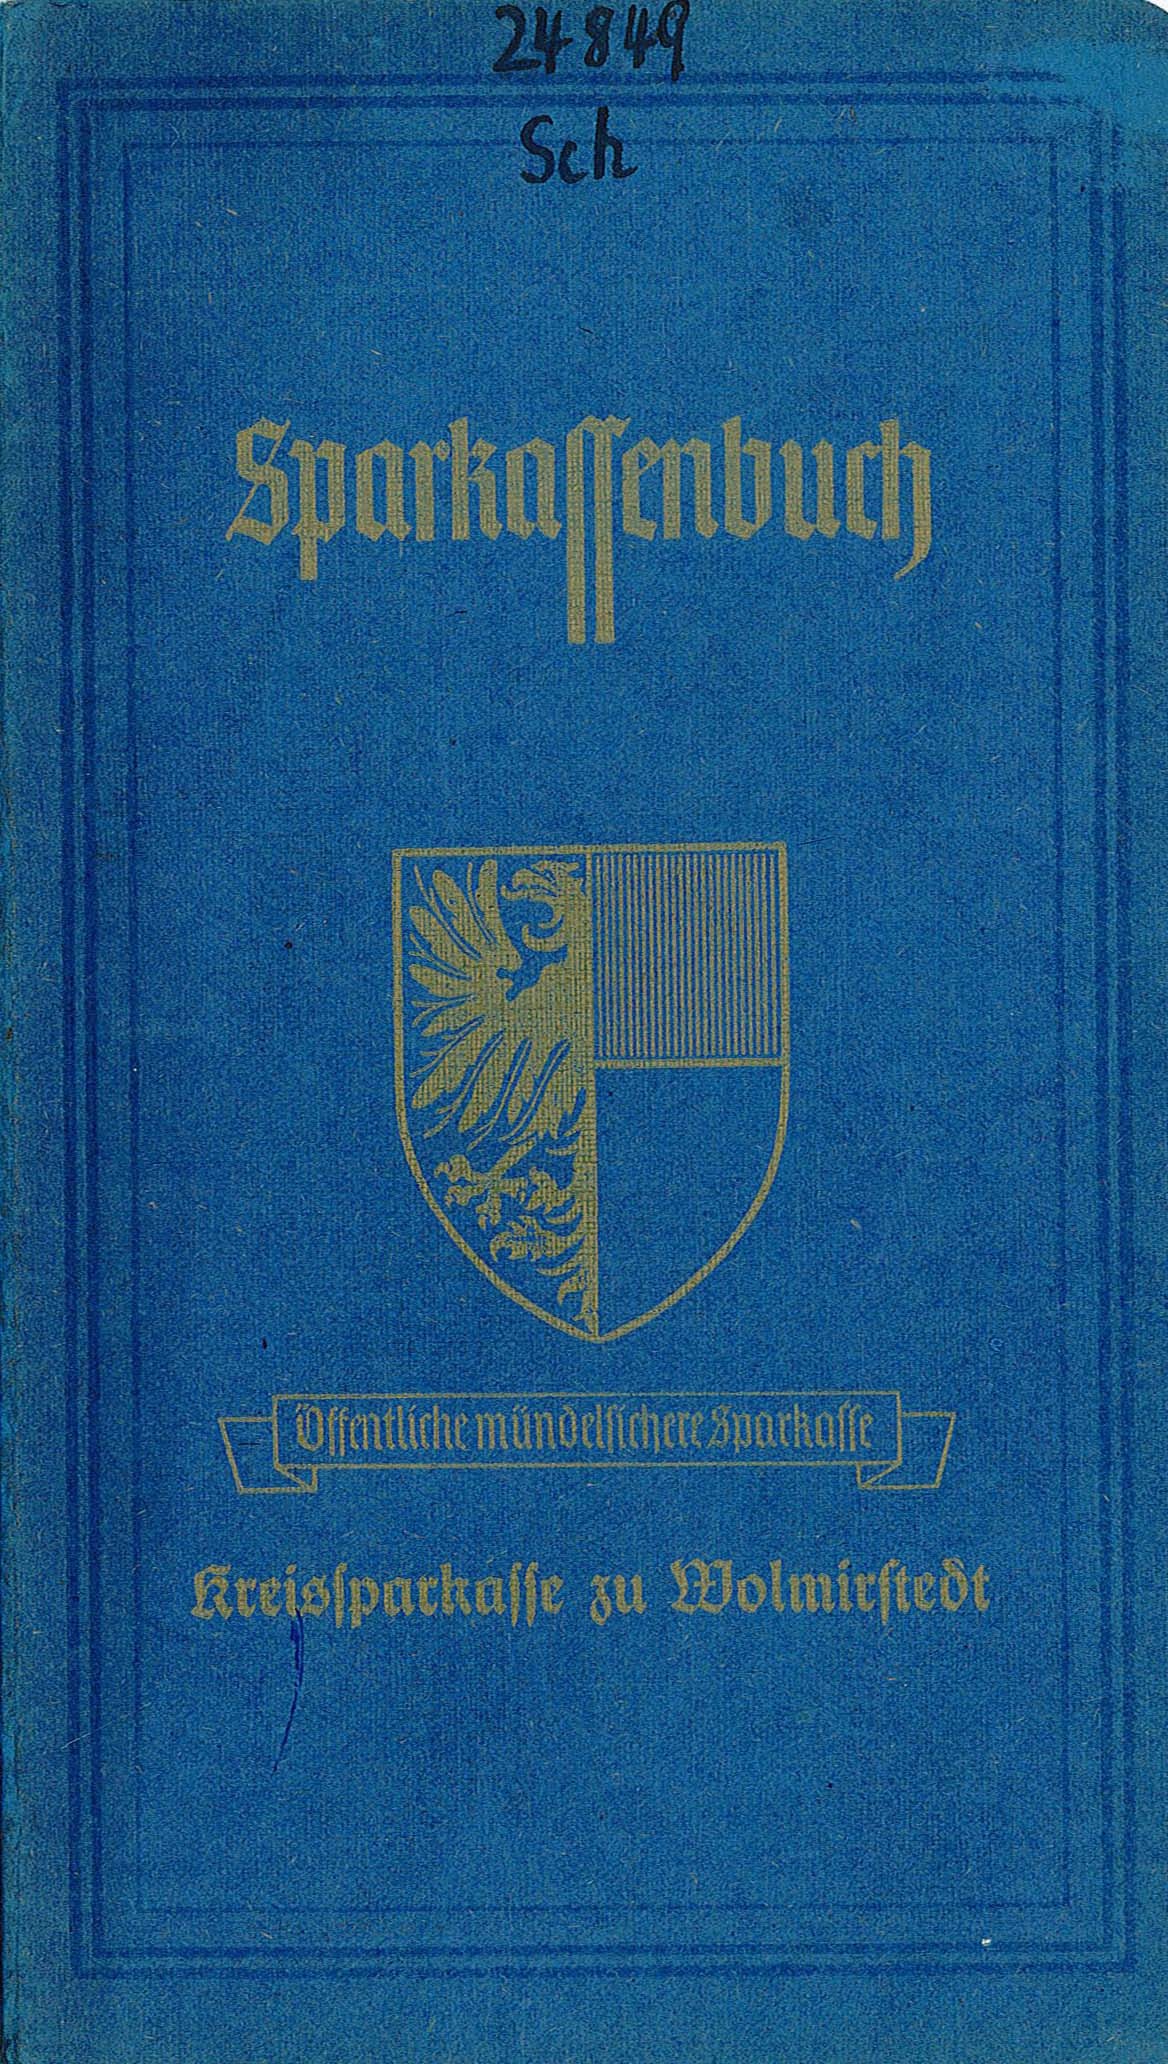 Sparkassen-Abrechnungsbuch für das Mündelgeld von Jürgen Schäfer, 1948-1950 (Museum Wolmirstedt RR-F)